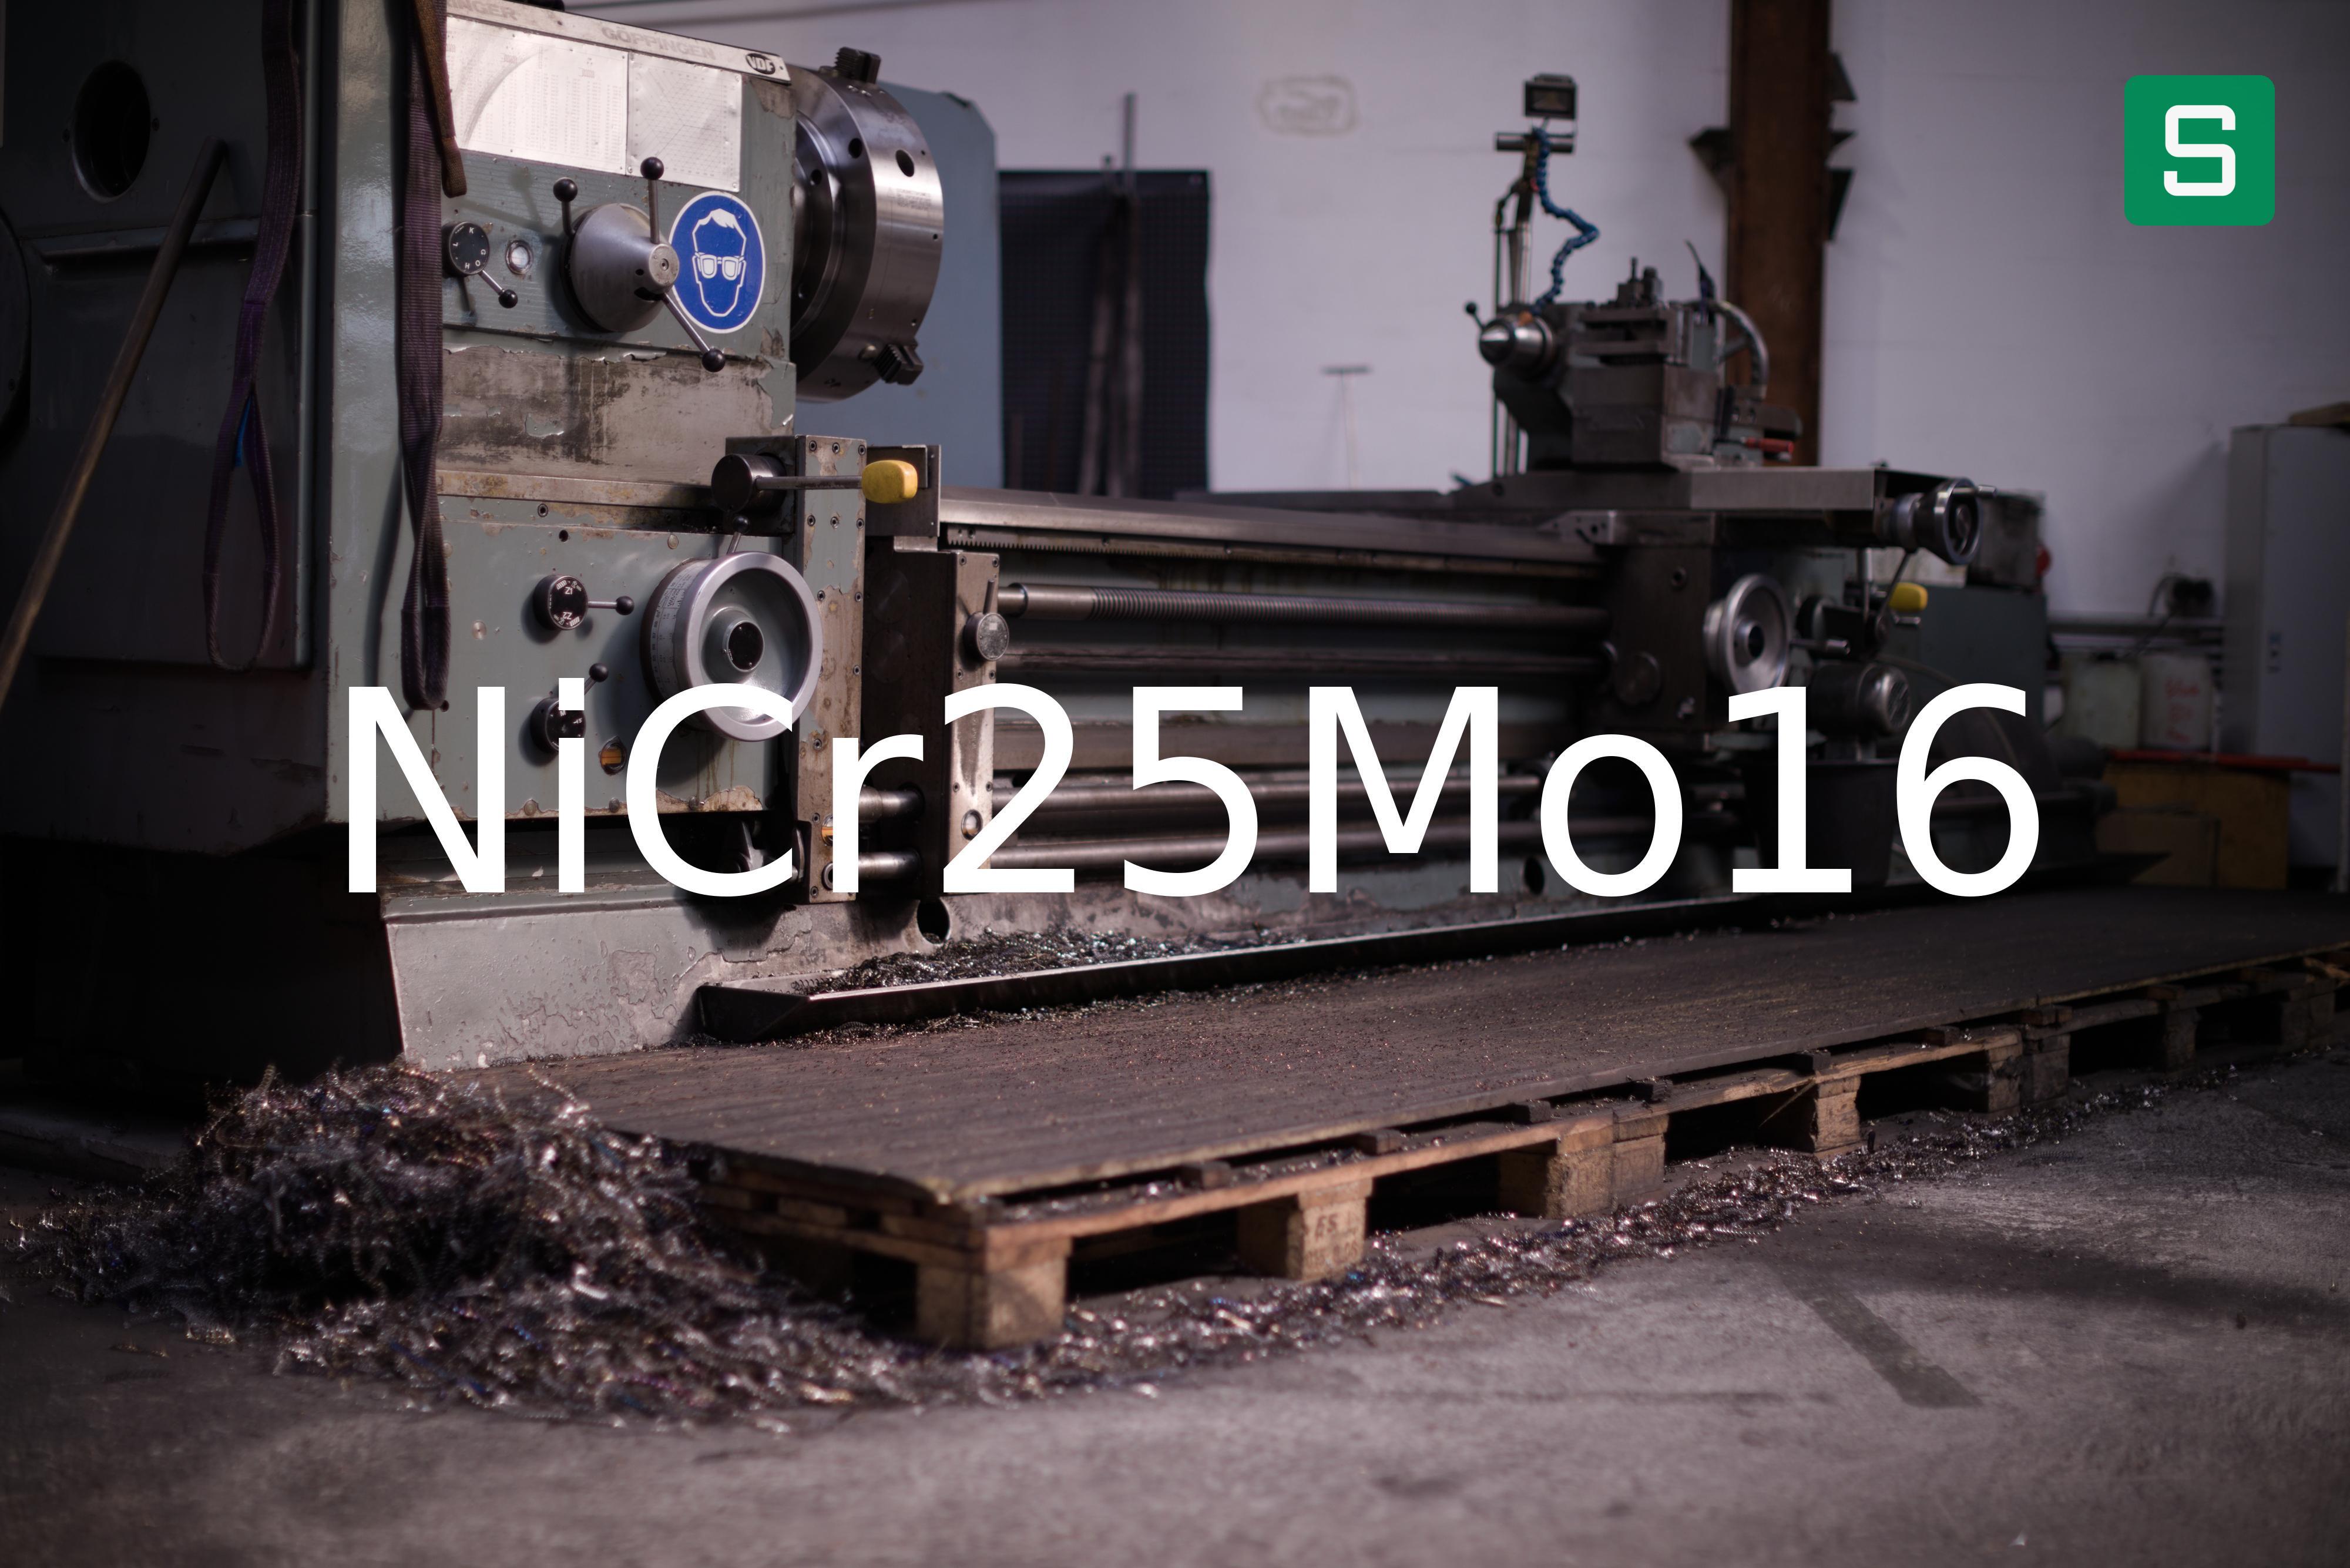 Steel Material: NiCr25Mo16